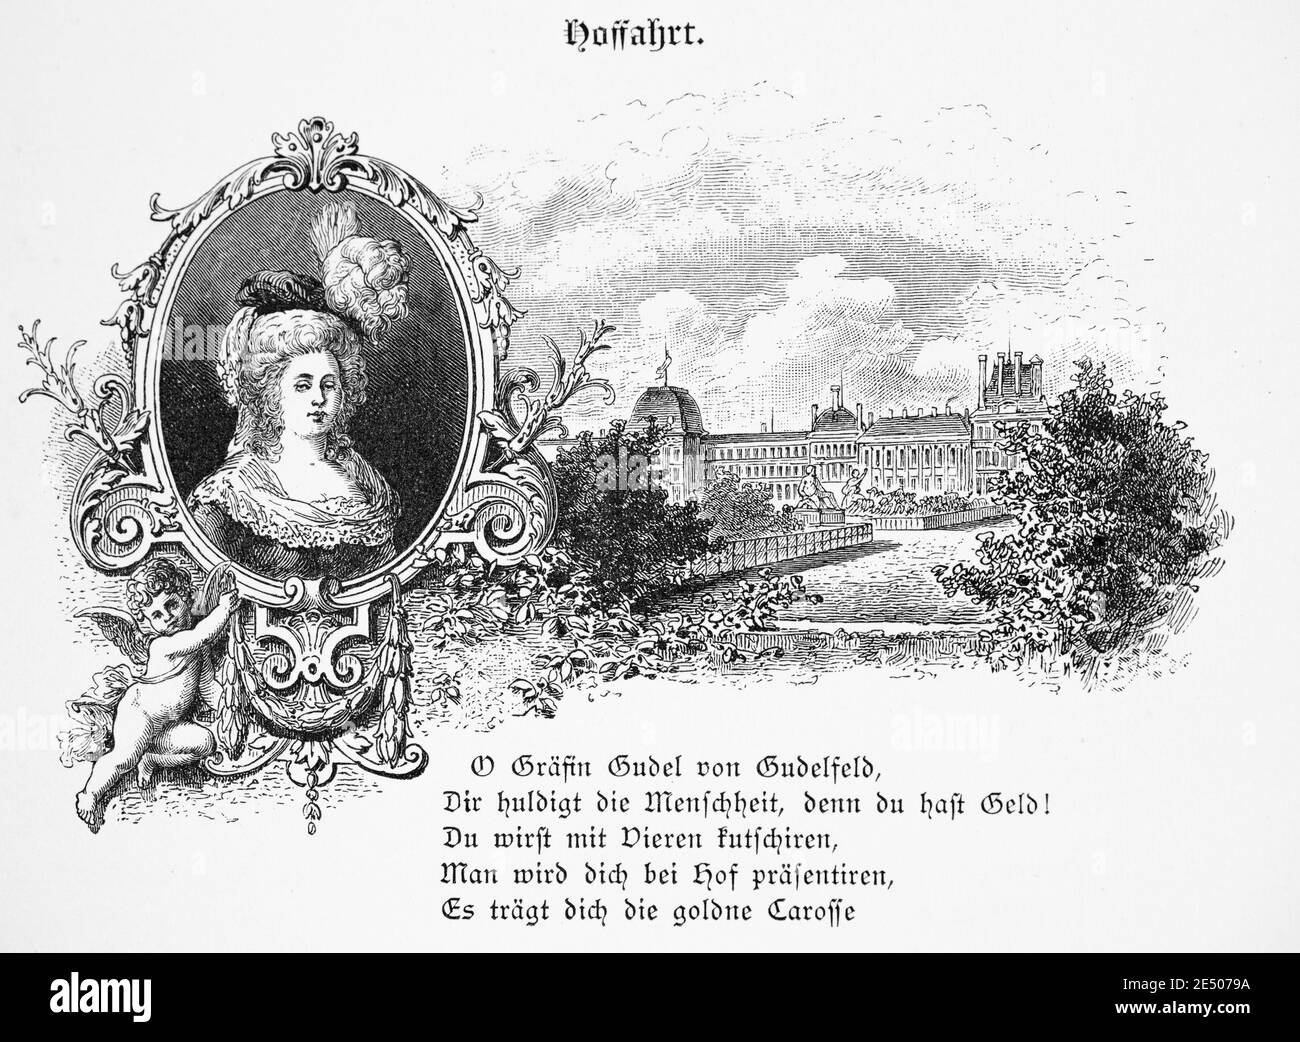 Ilustración de Heine´s poema 'Hoffahrt' sobre la condesa von Gudelfeld, escritor y poeta alemán Heinrich Heine, colección de poemas Romancero, 1880 Foto de stock